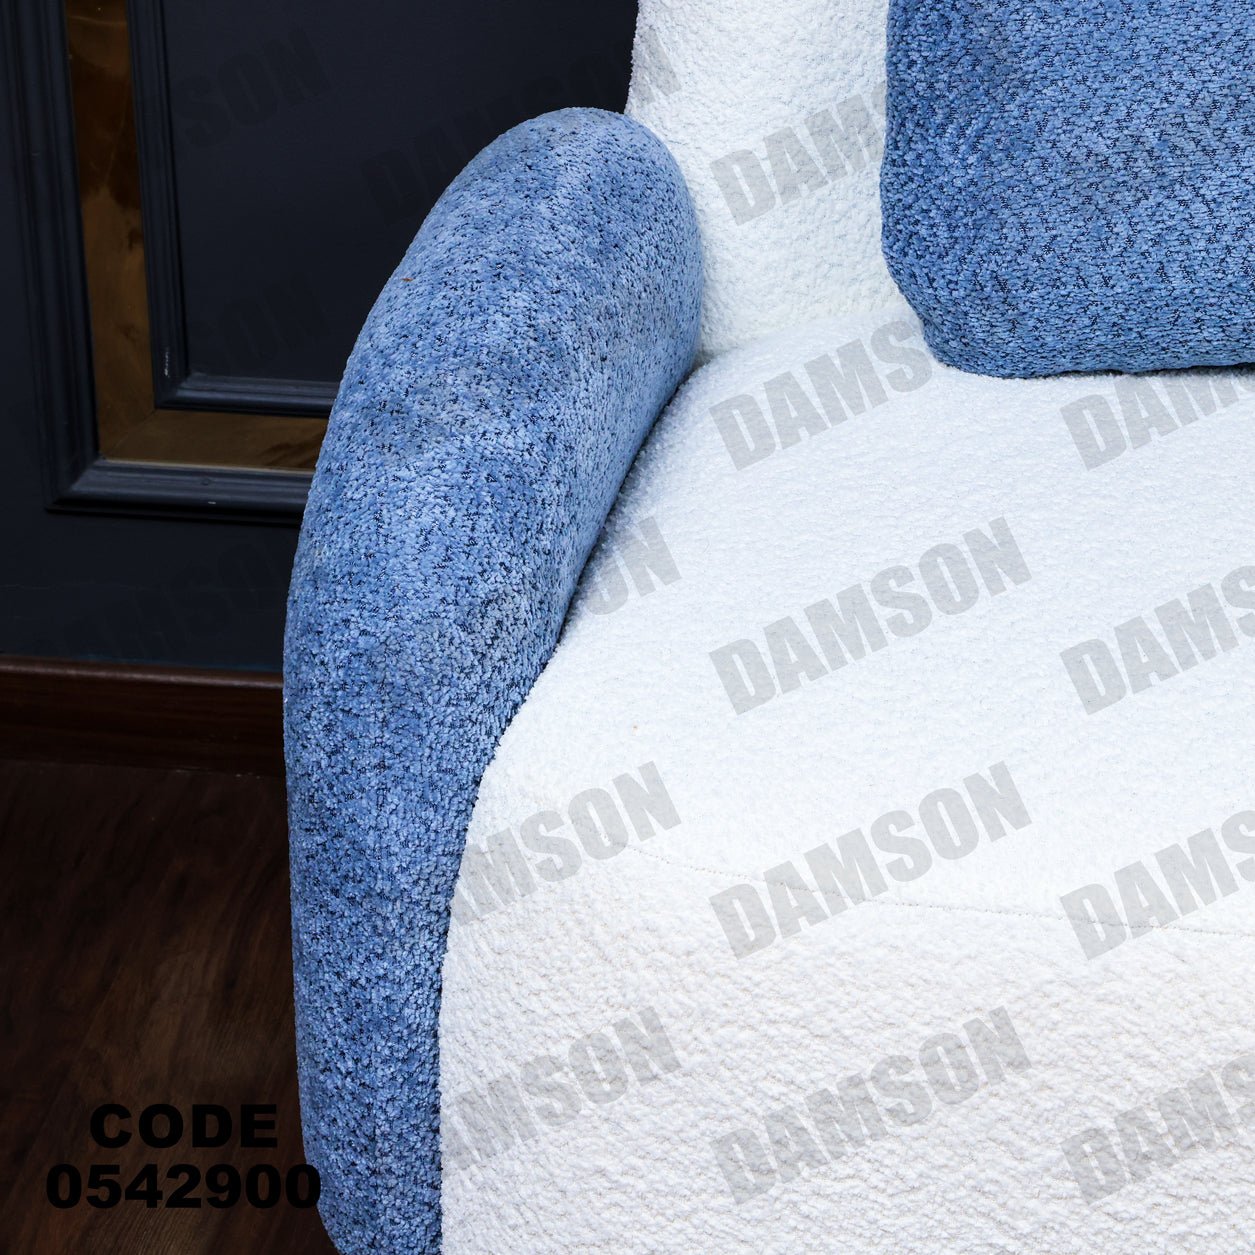 انترية 429 - Damson Furnitureانترية 429